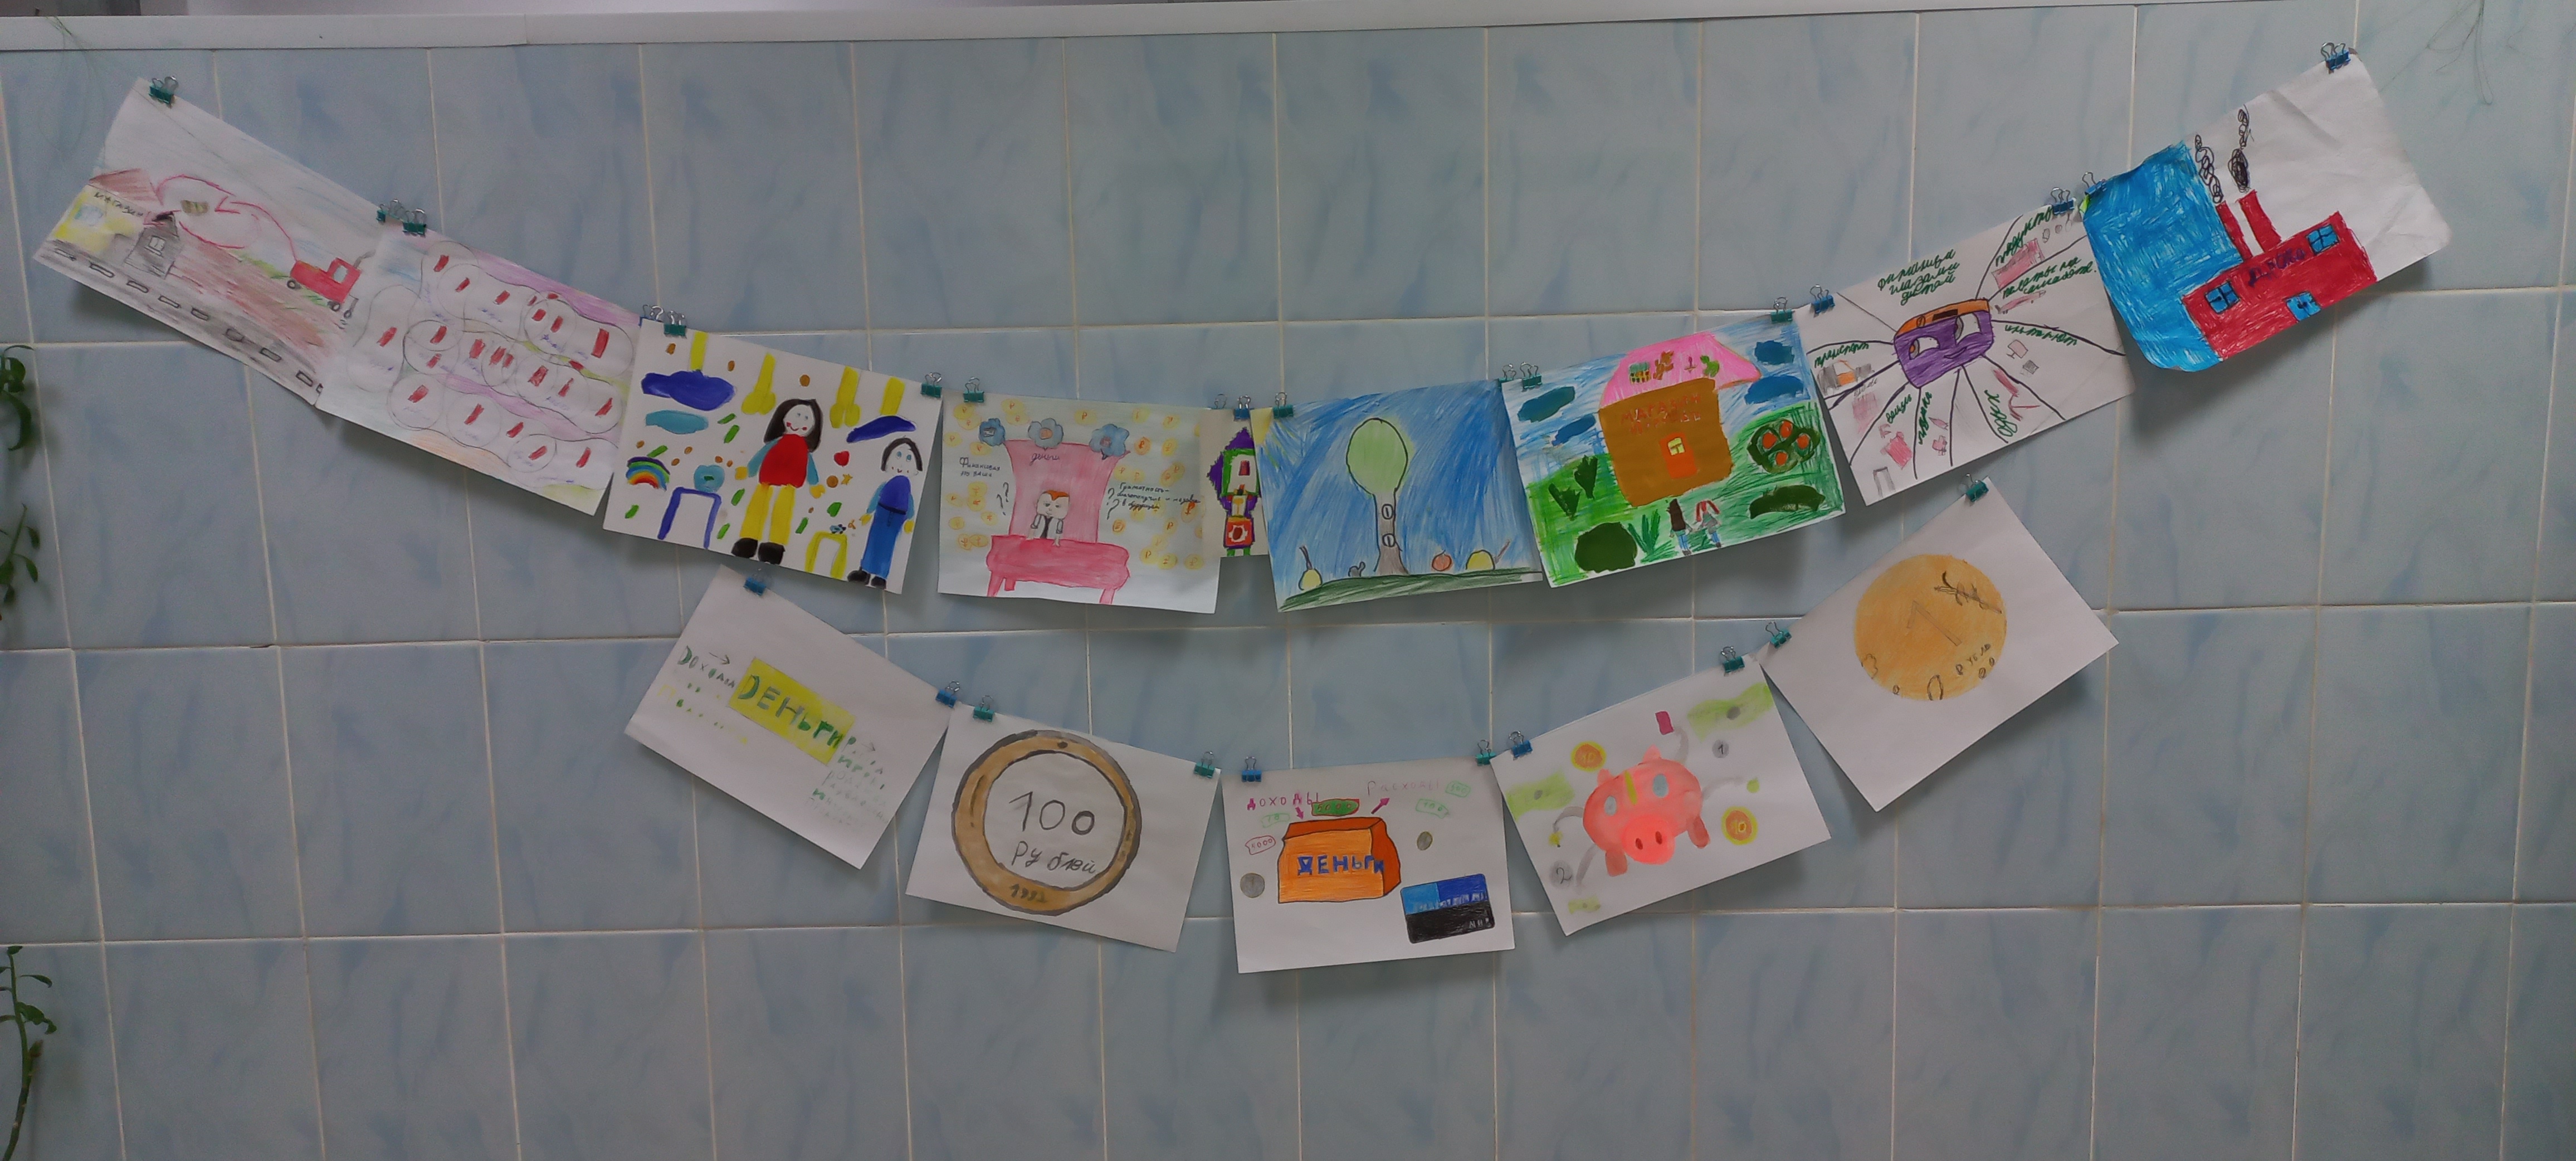 Конкурс рисунков в начальной школе «Финансы глазами детей».